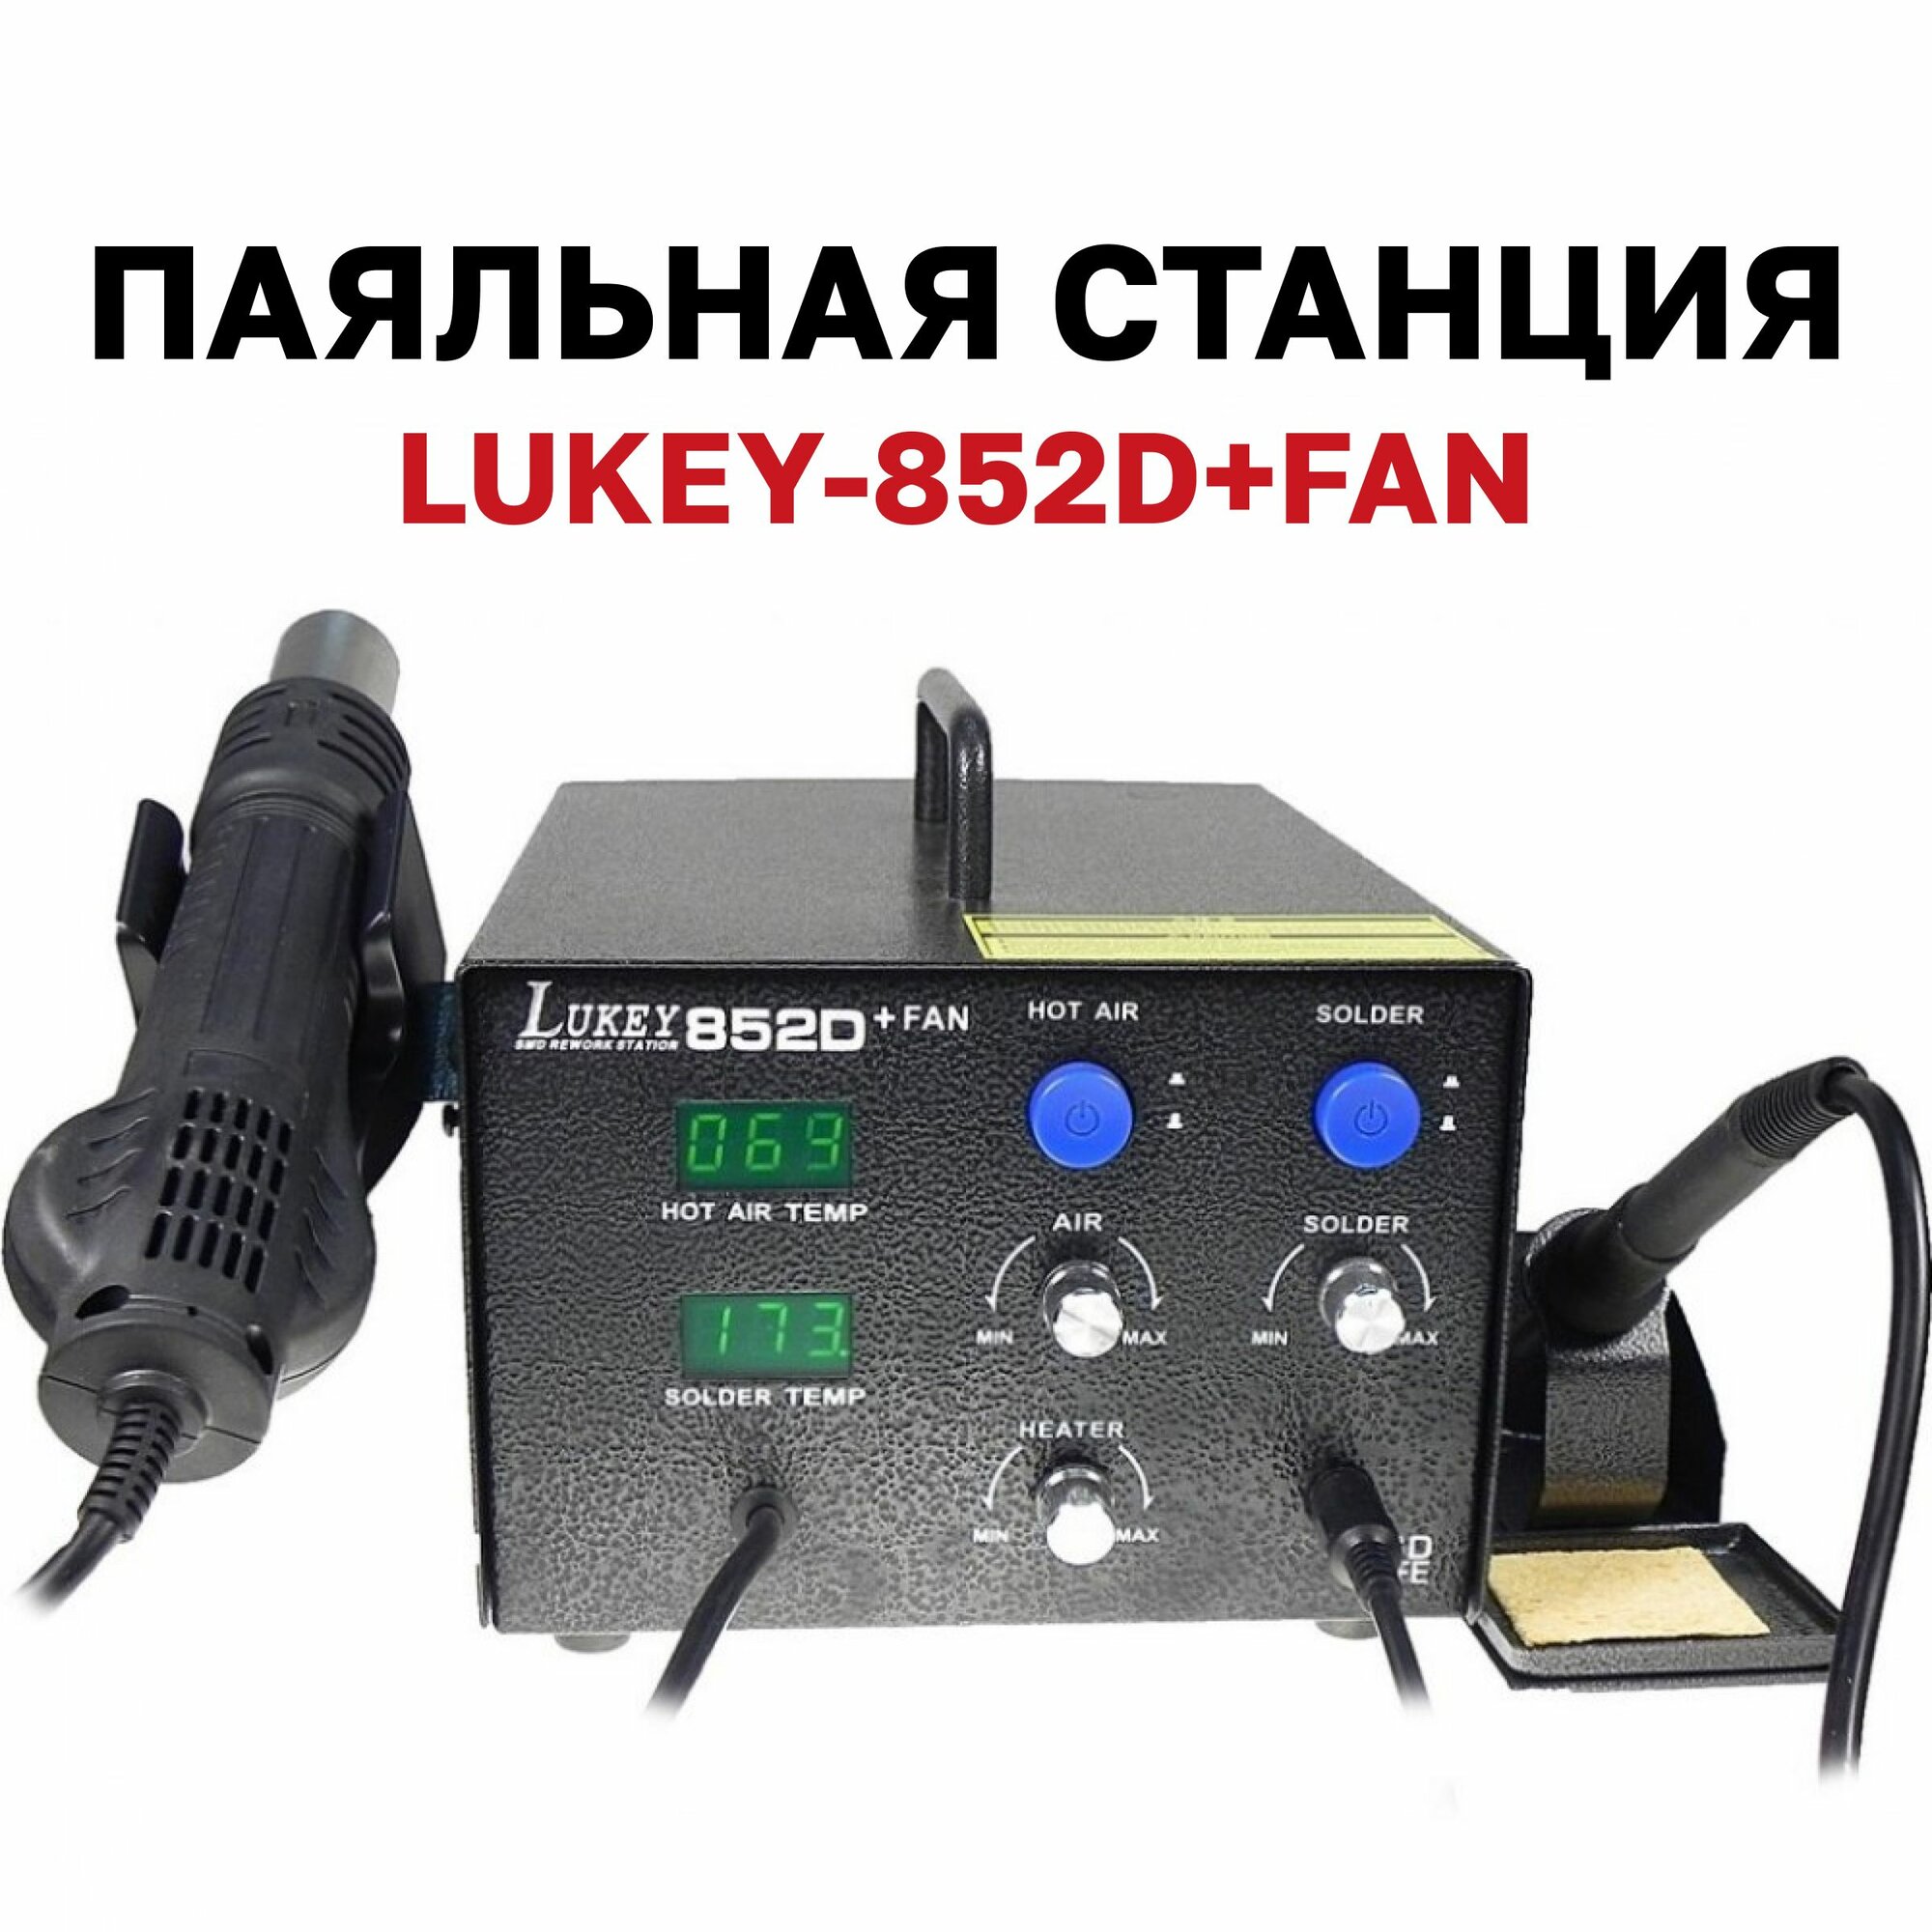 LUKEY-852D+FAN, паяльная станция